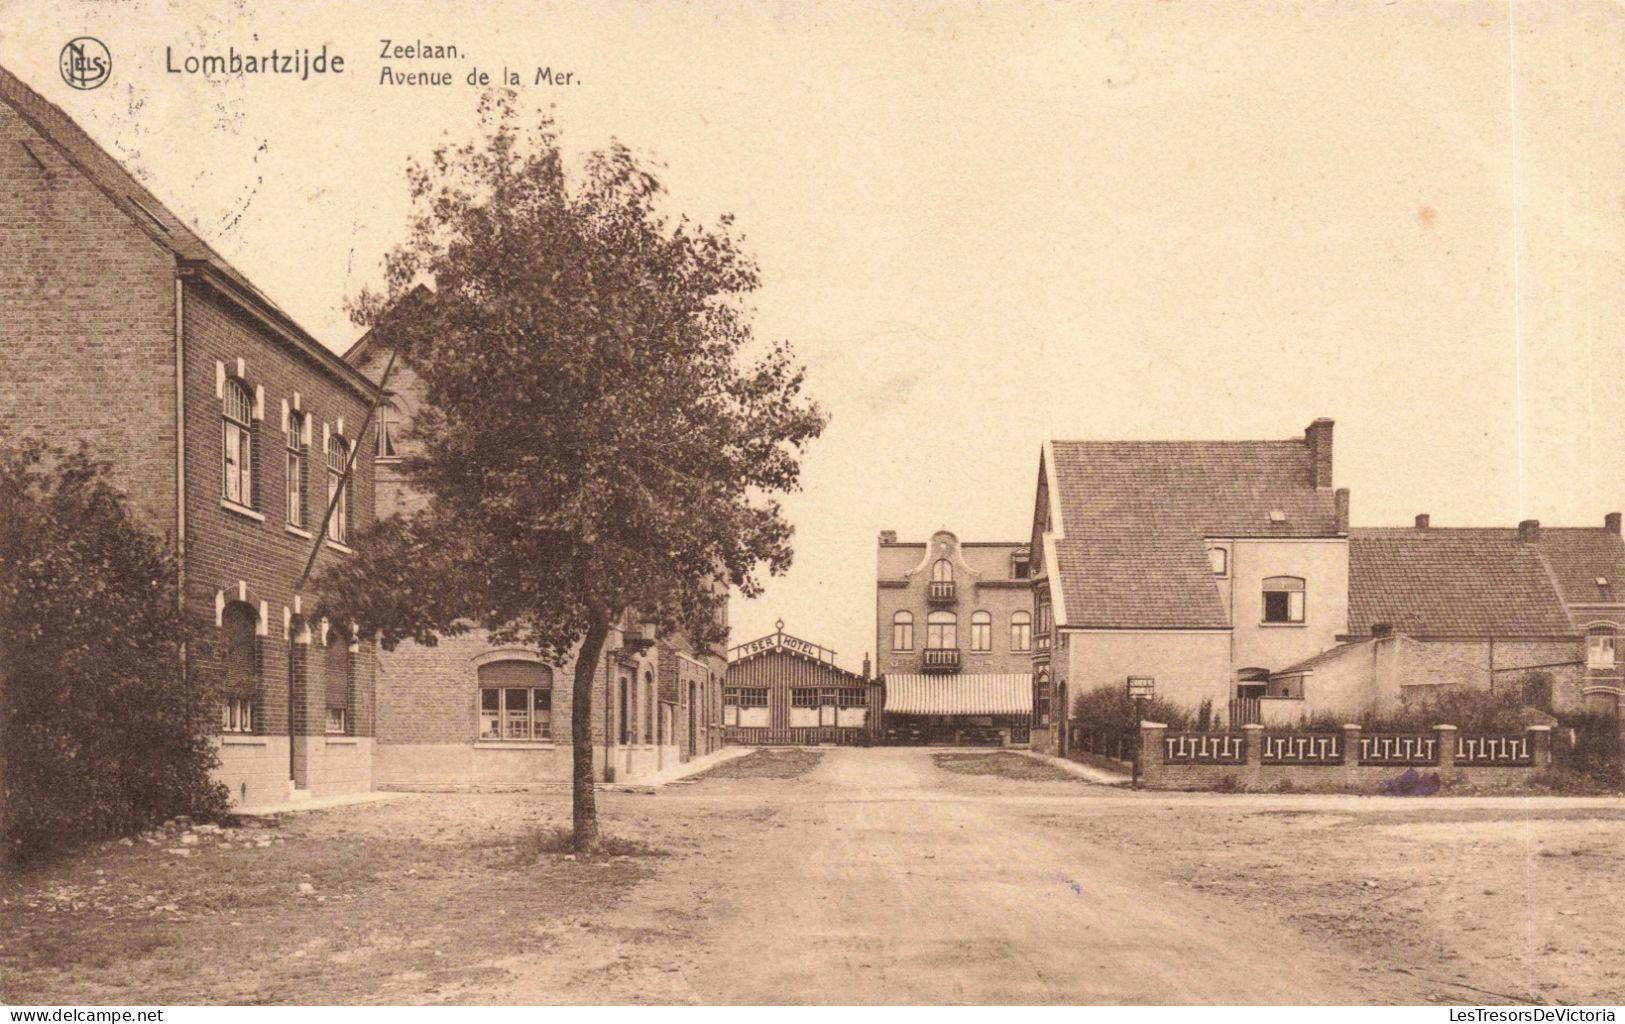 BELGIQUE - Oostende - Lombartzijde - Zeelaan - Avenue De La Mer - Village - Carte Postale Ancienne - Oostende